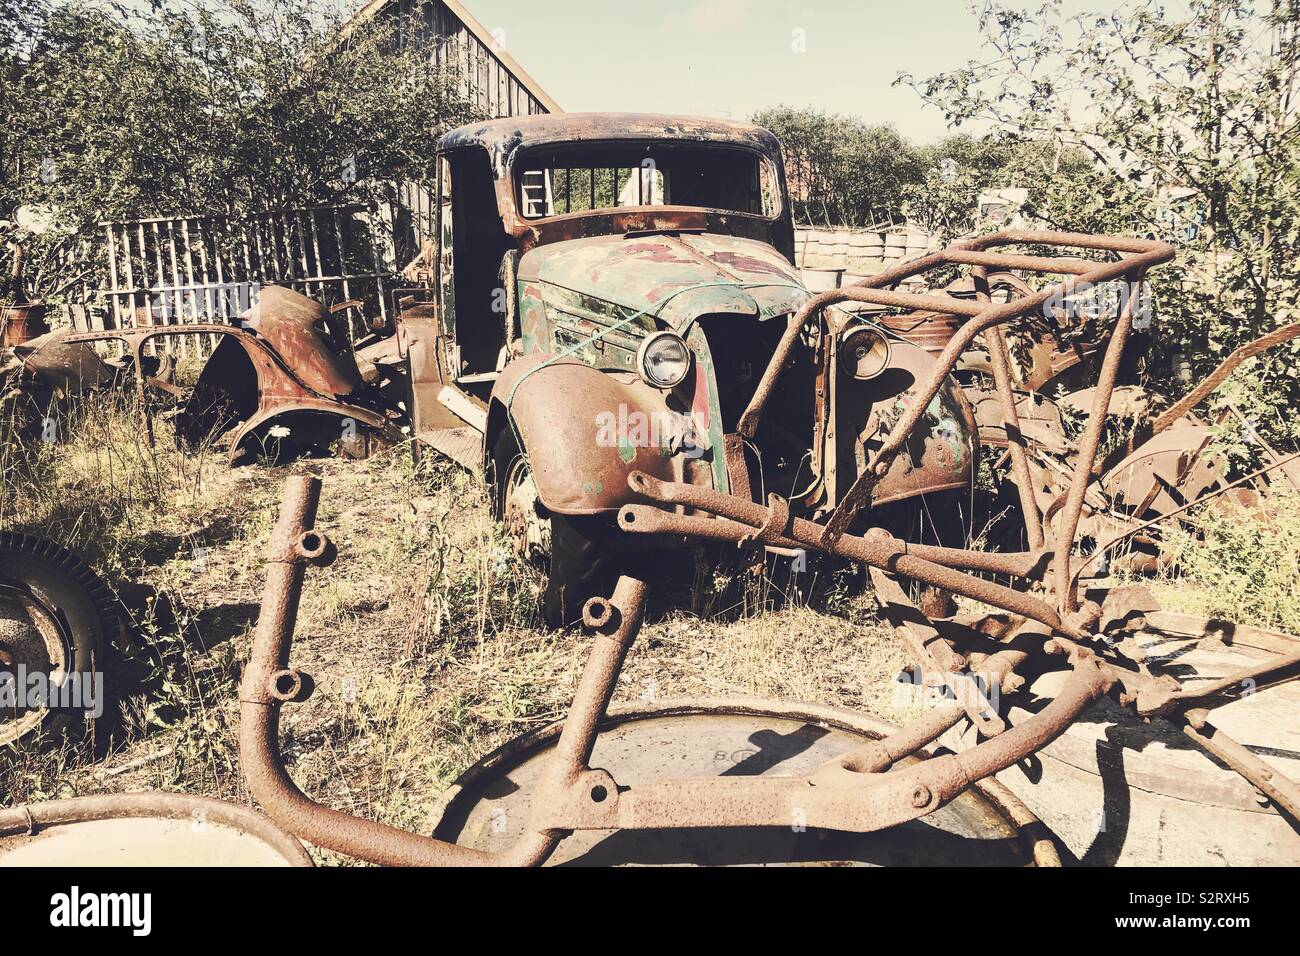 Crashed Old car Stock Photo